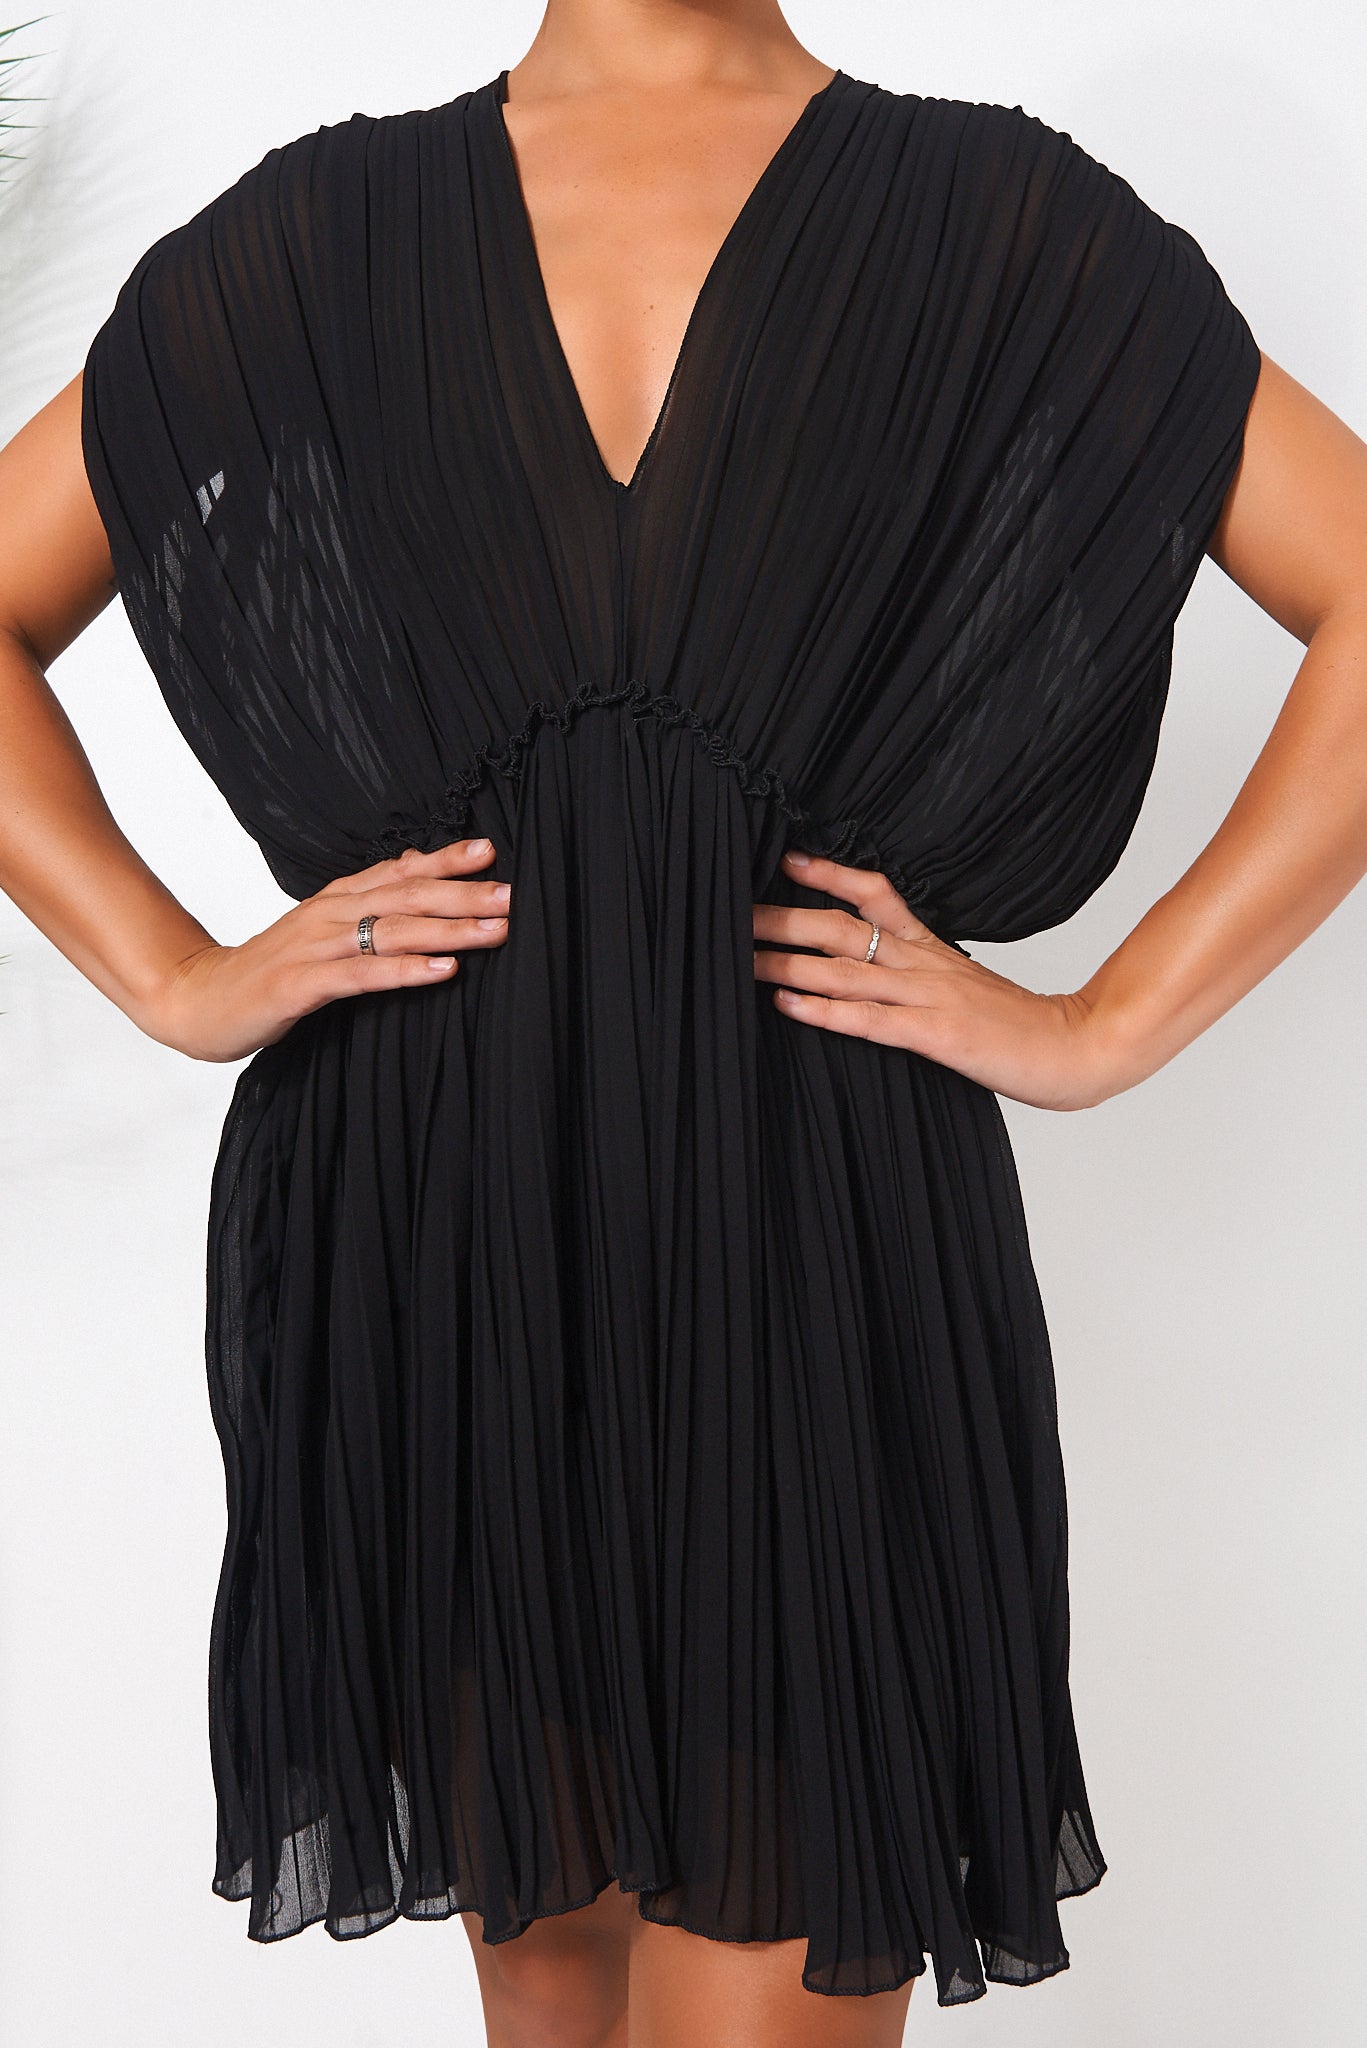 Black Grecian Chiffon Pleated Dress